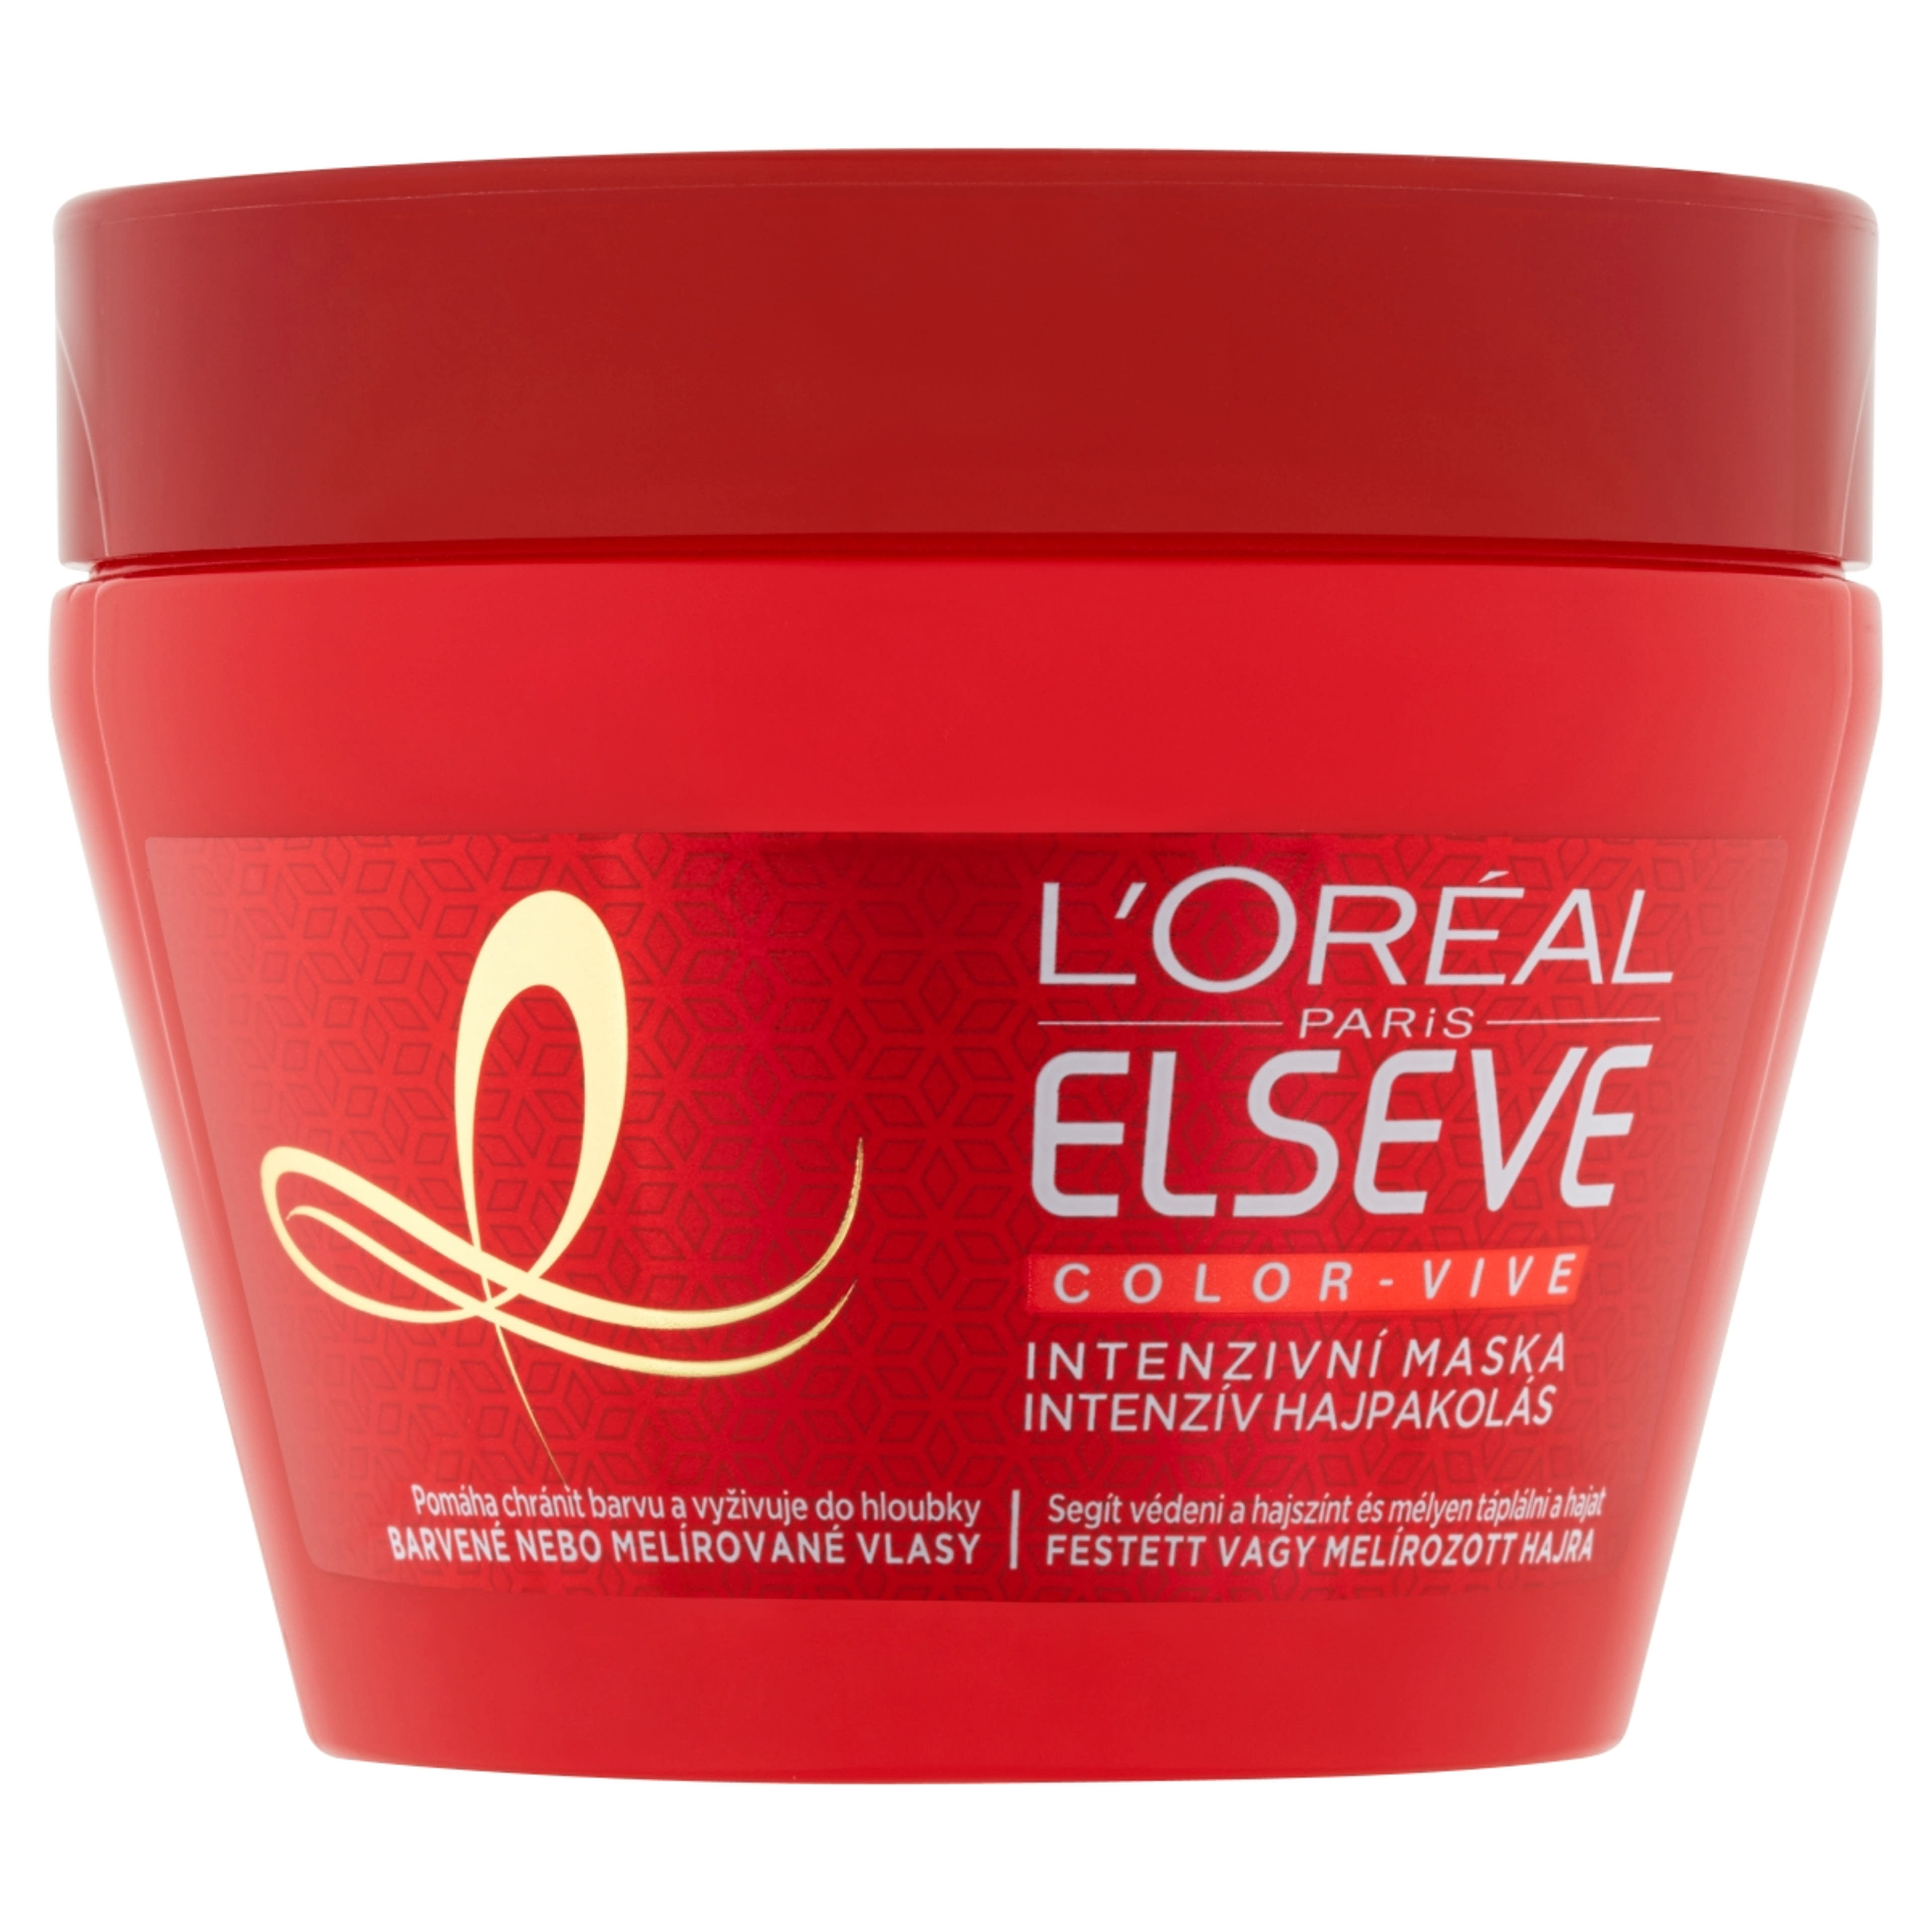 L'Oréal Paris Elseve Color-vive színvédő hajpakolás - 300 ml